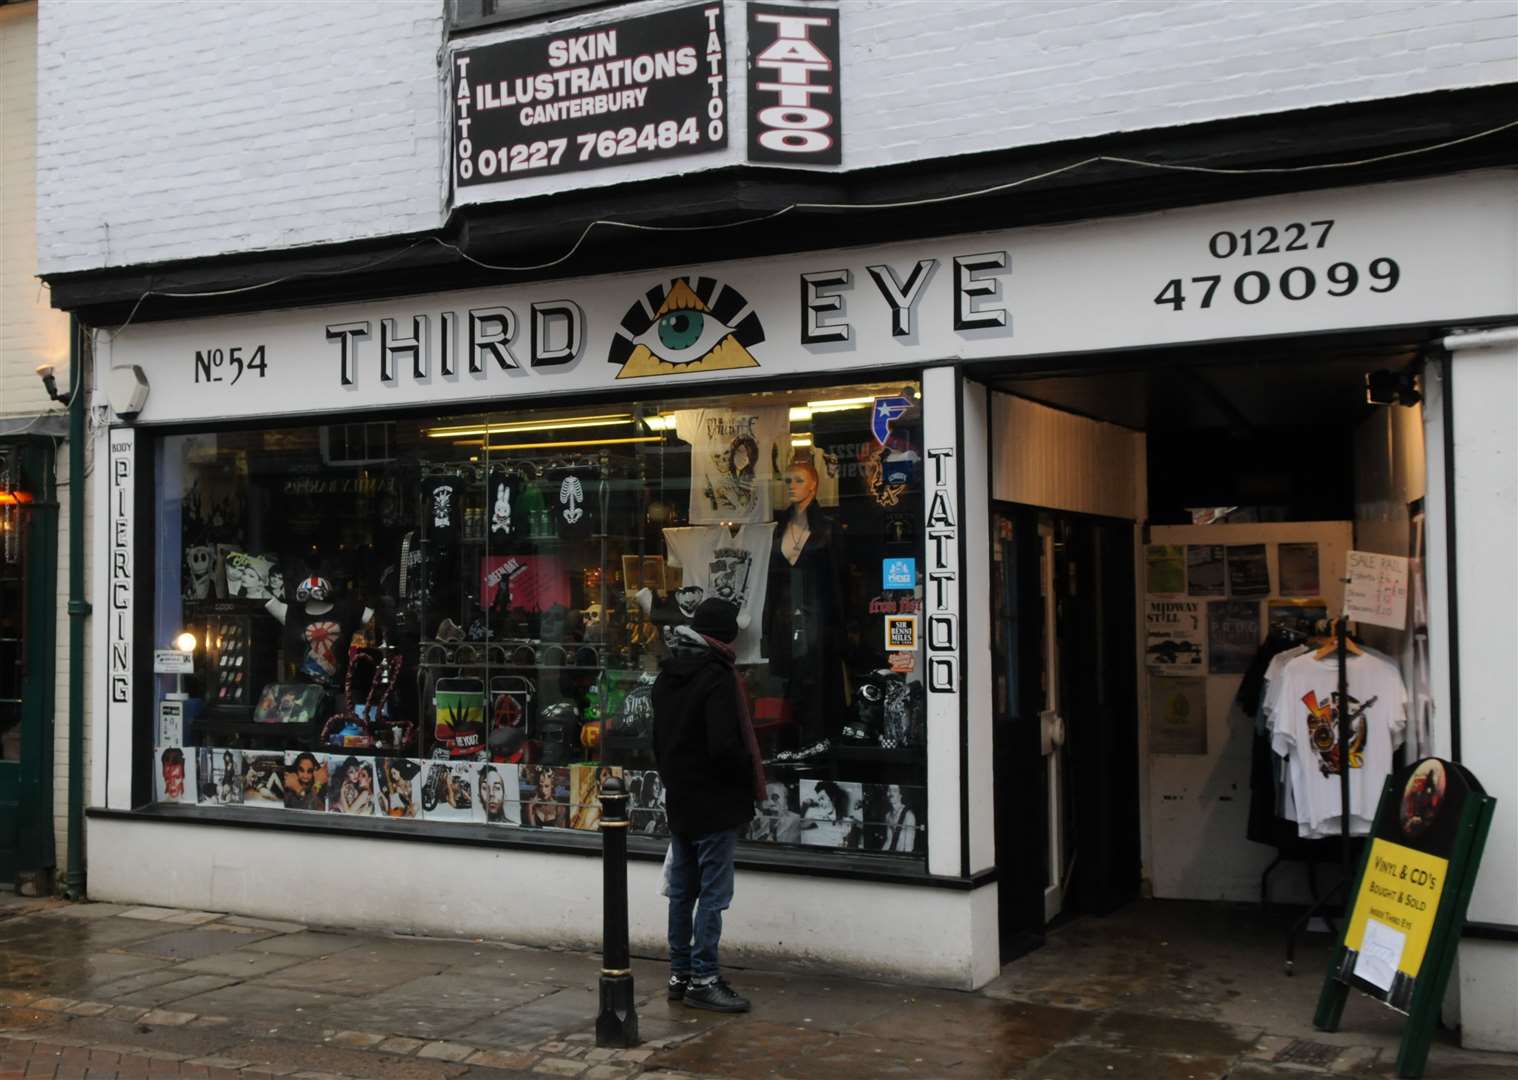 Third Eye in Canterbury is no longer shutting down